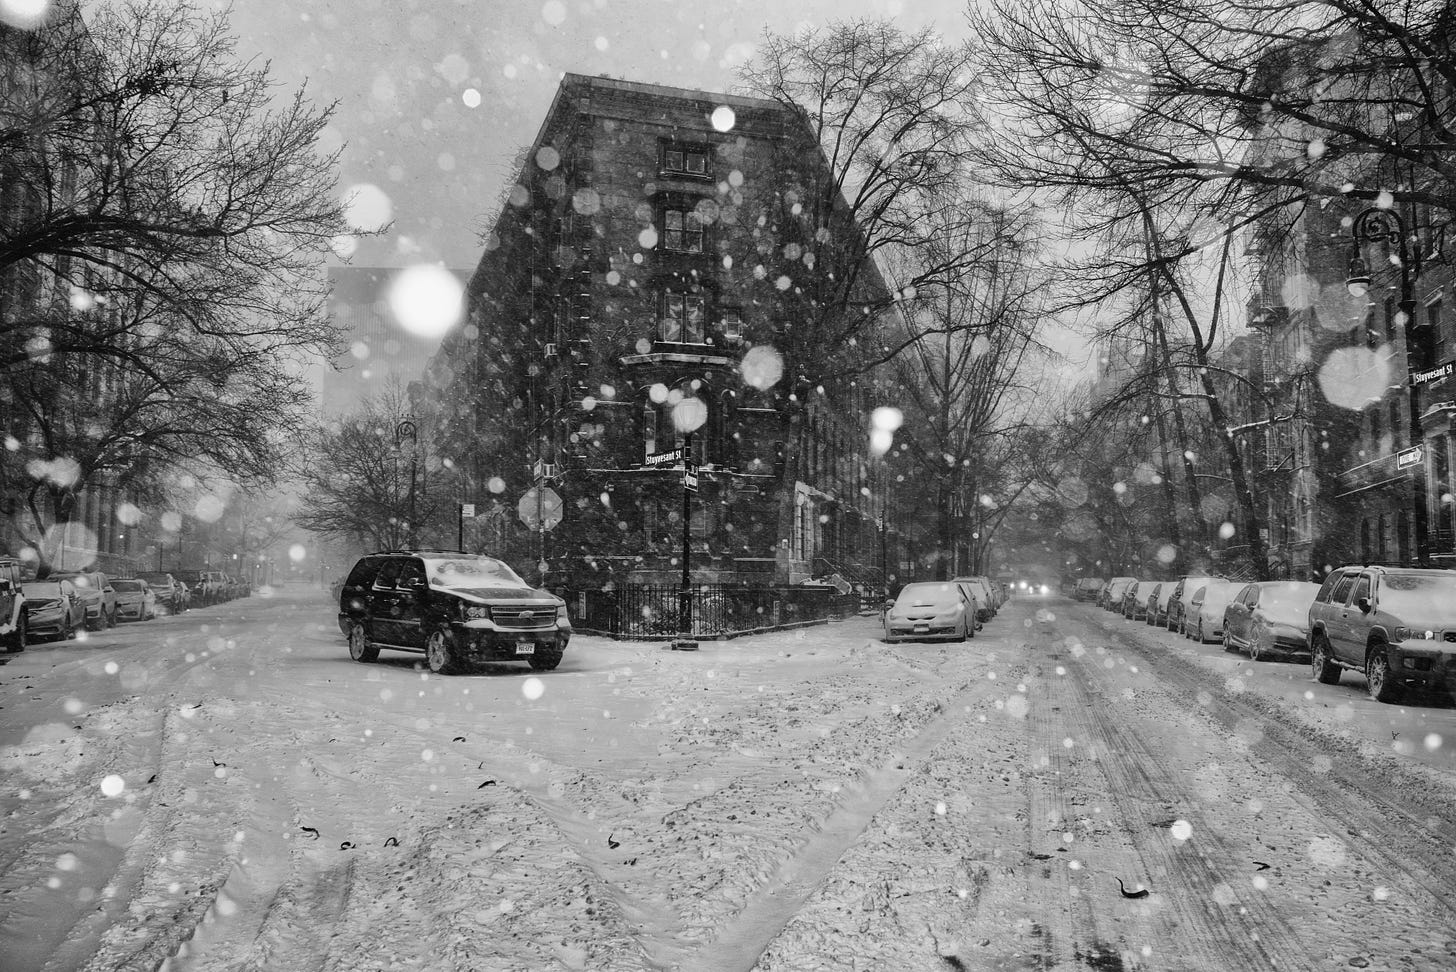 A snowy winter street